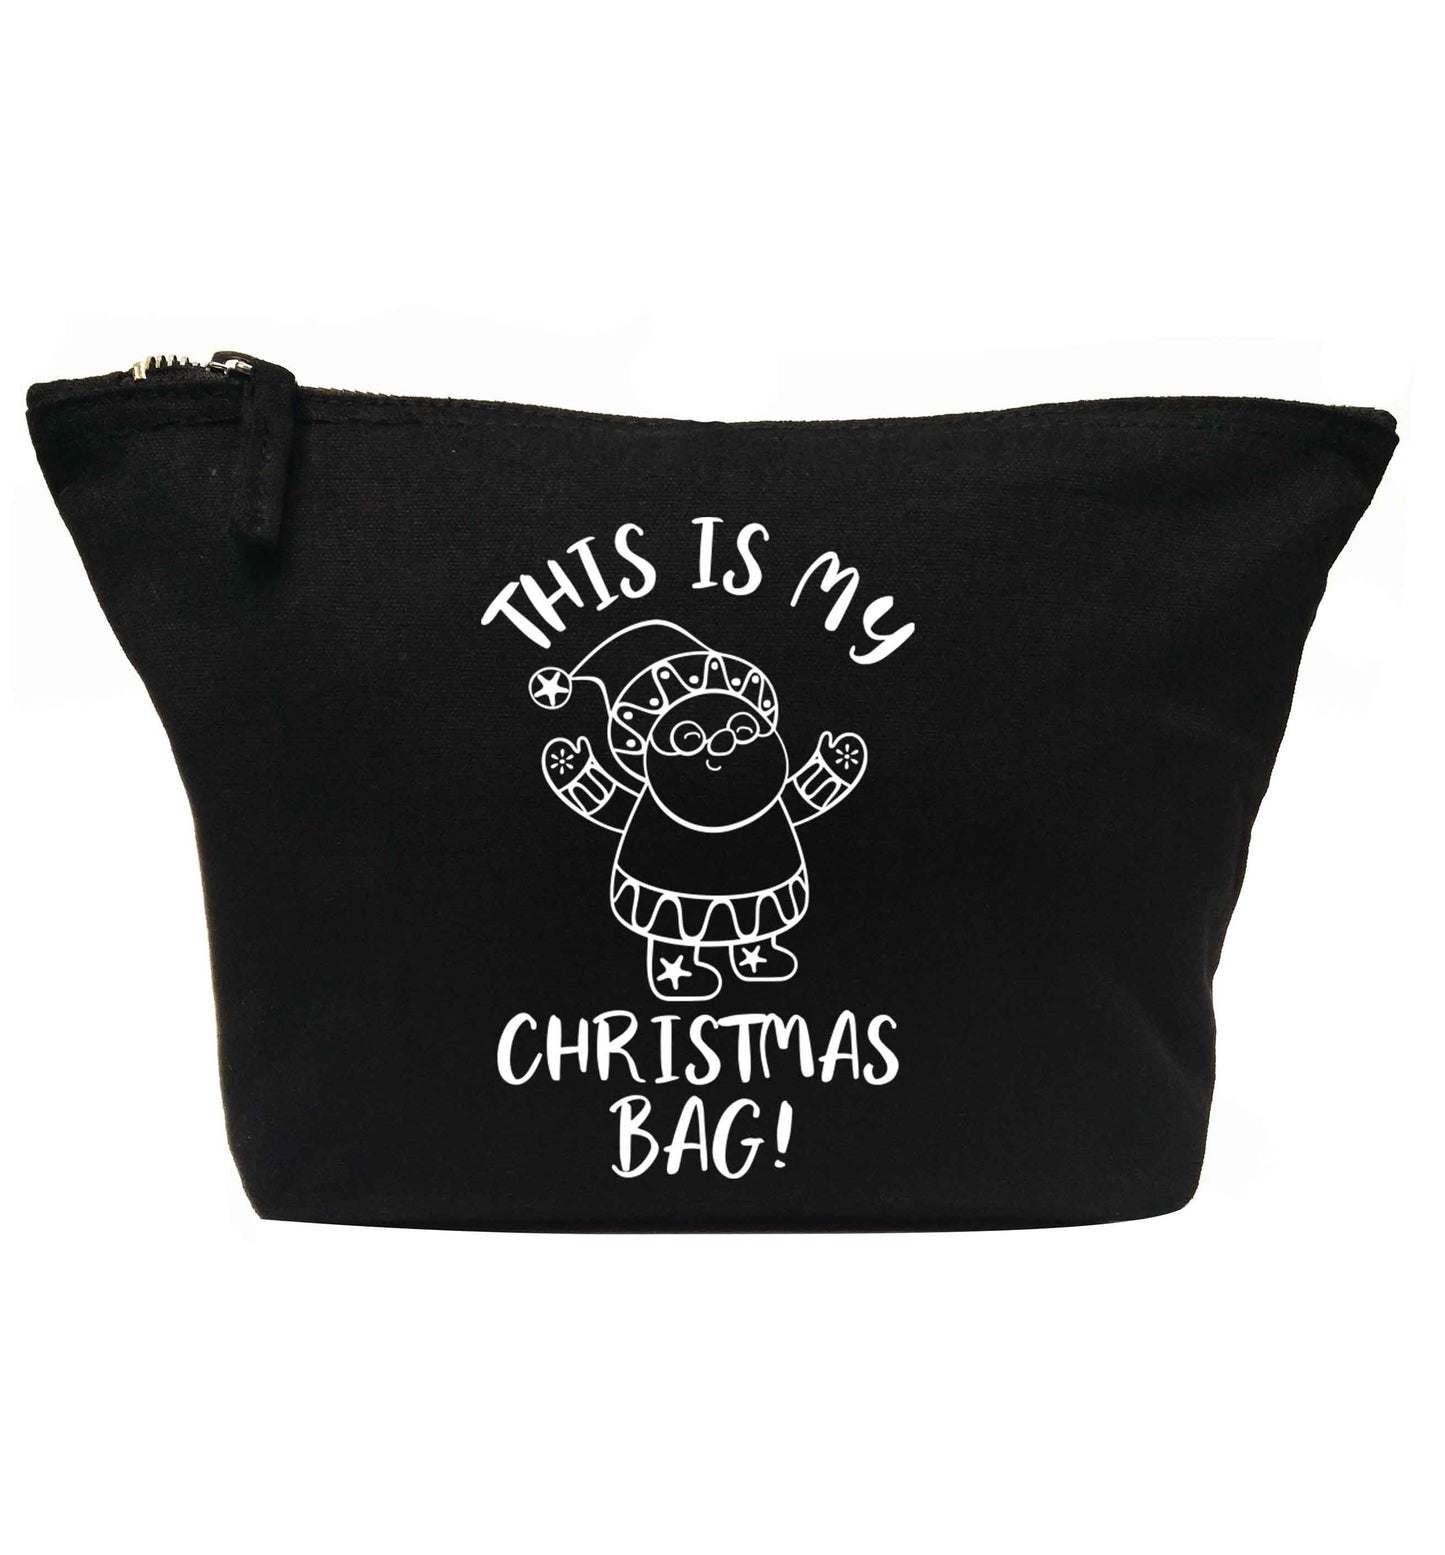 This is my Christmas bag | makeup / wash bag